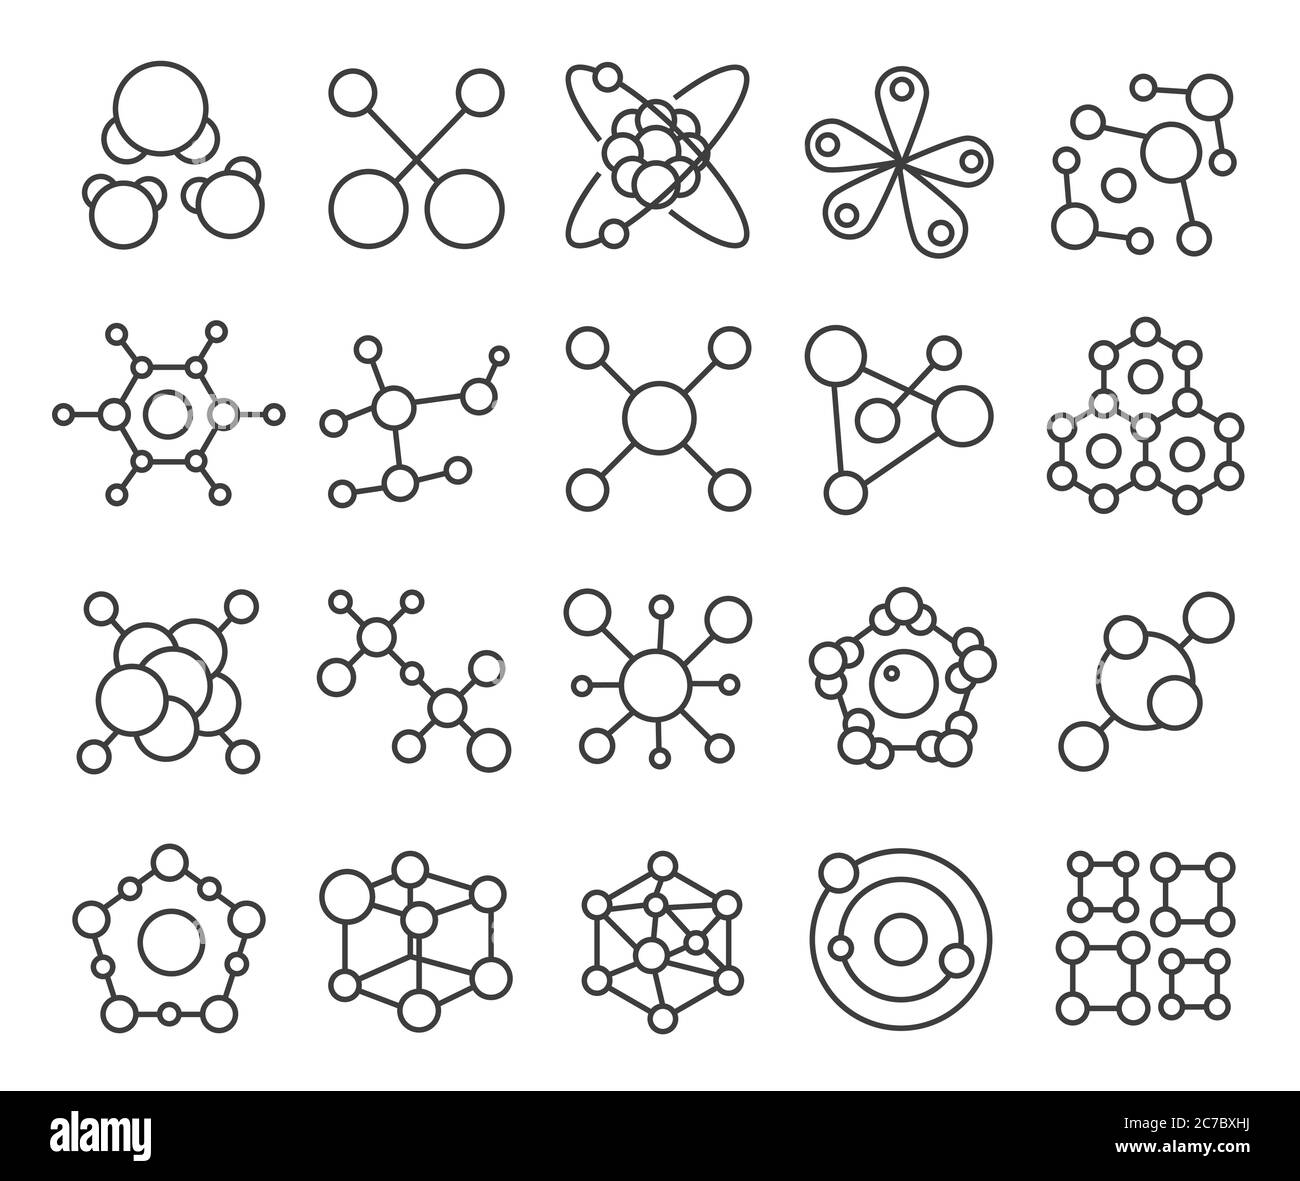 Symbole für Molekülmodelle gesetzt. Chemische Struktur von Molekülen und Wissenschaft. Symbole für die Linienführung von Atommolekülen isoliert. Stock Vektor